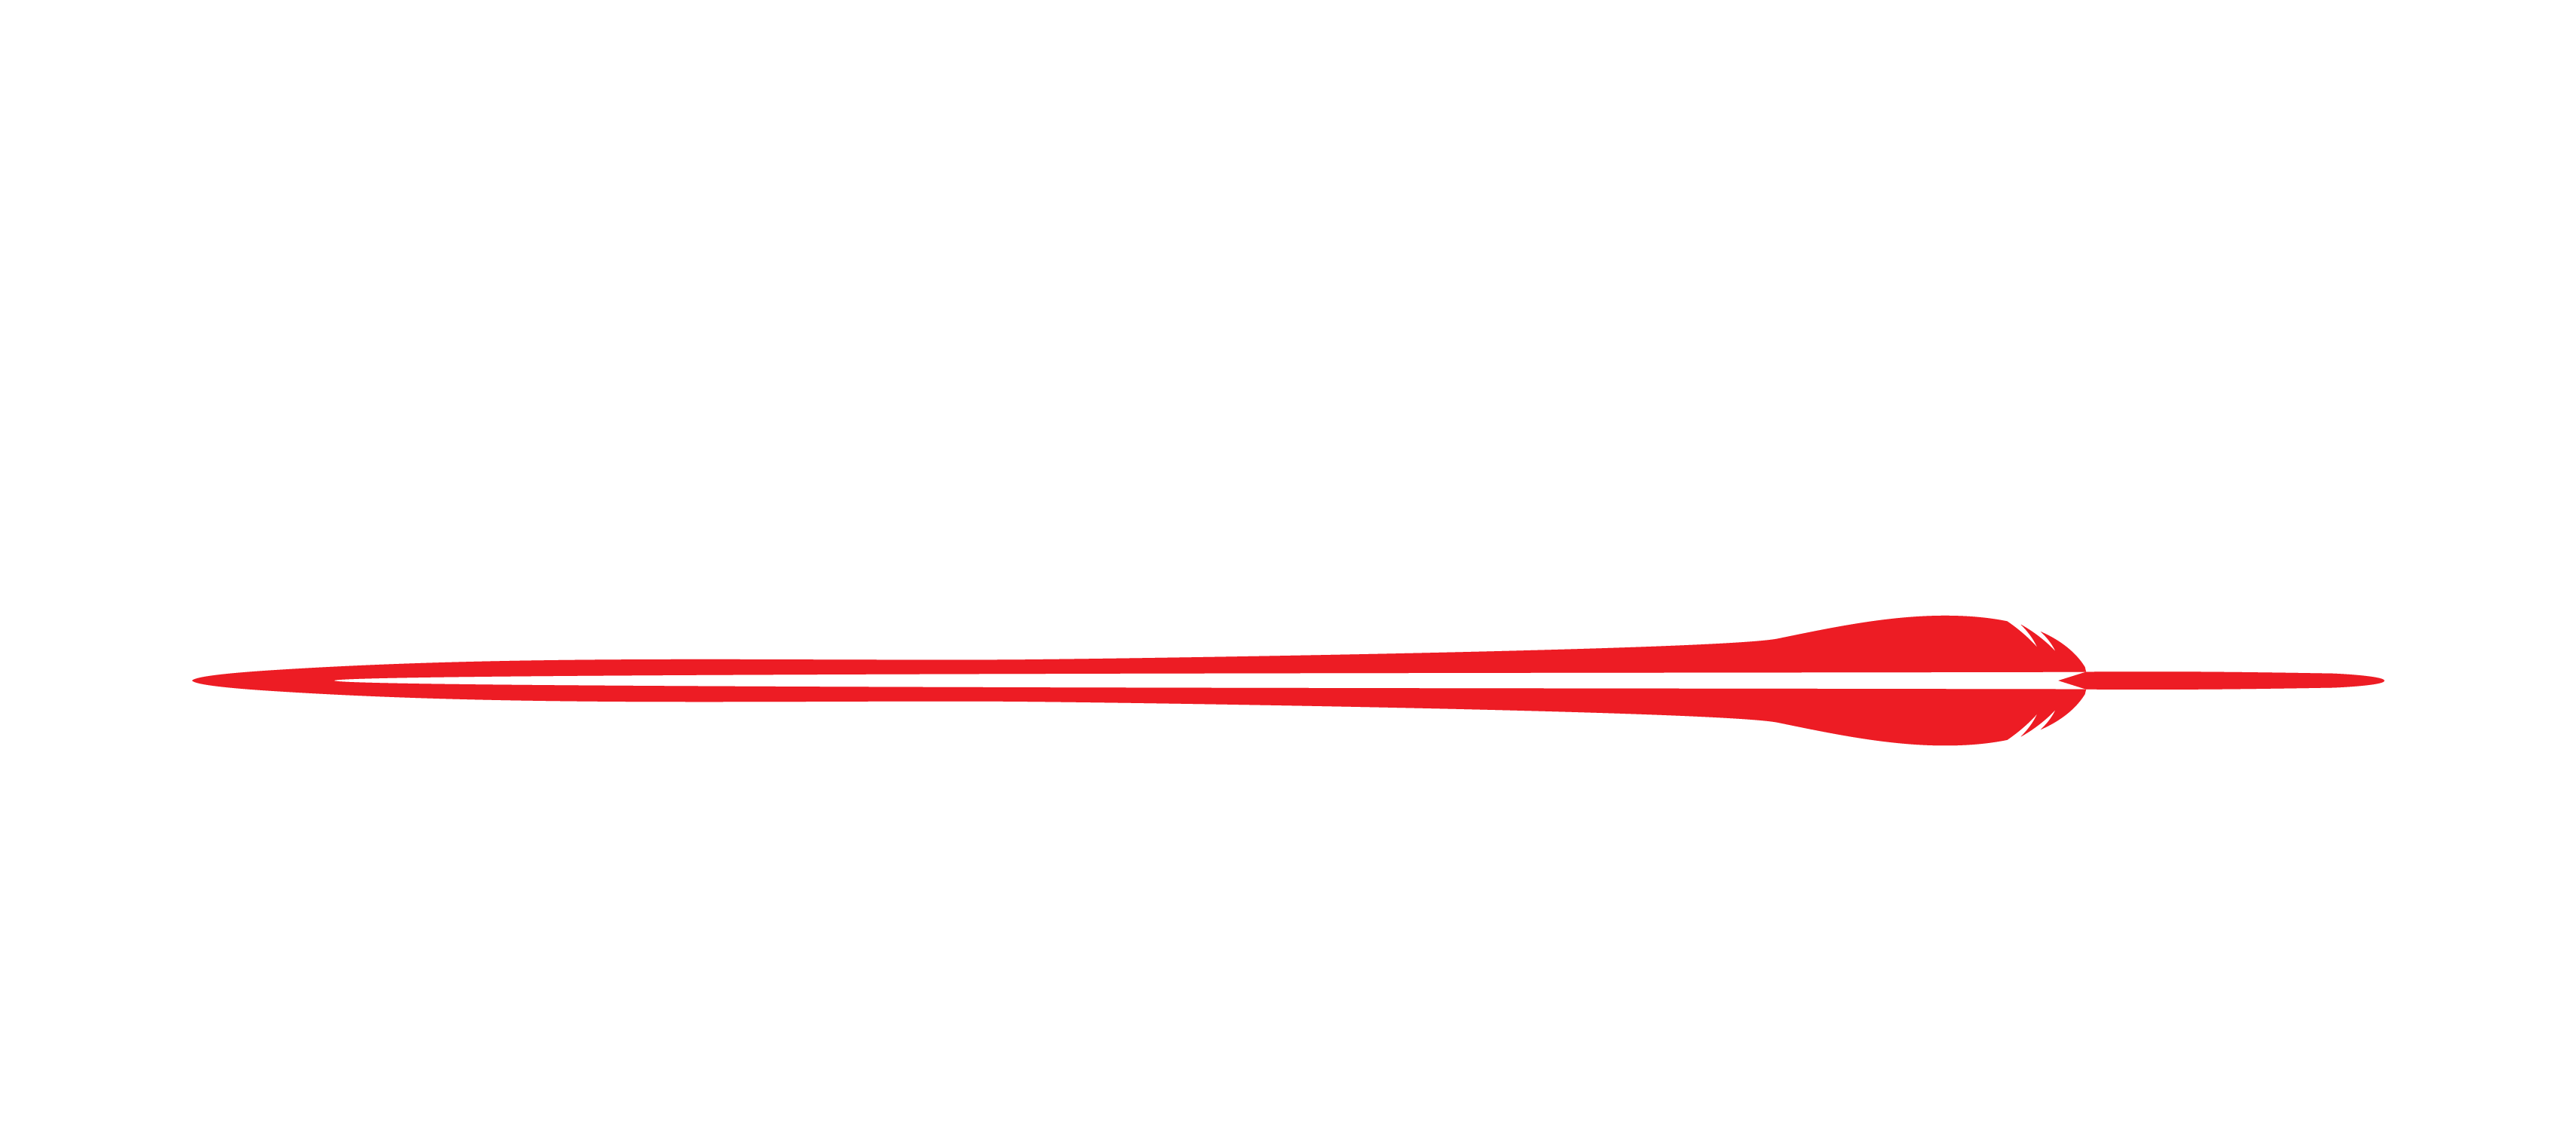 Te Amokura Productions